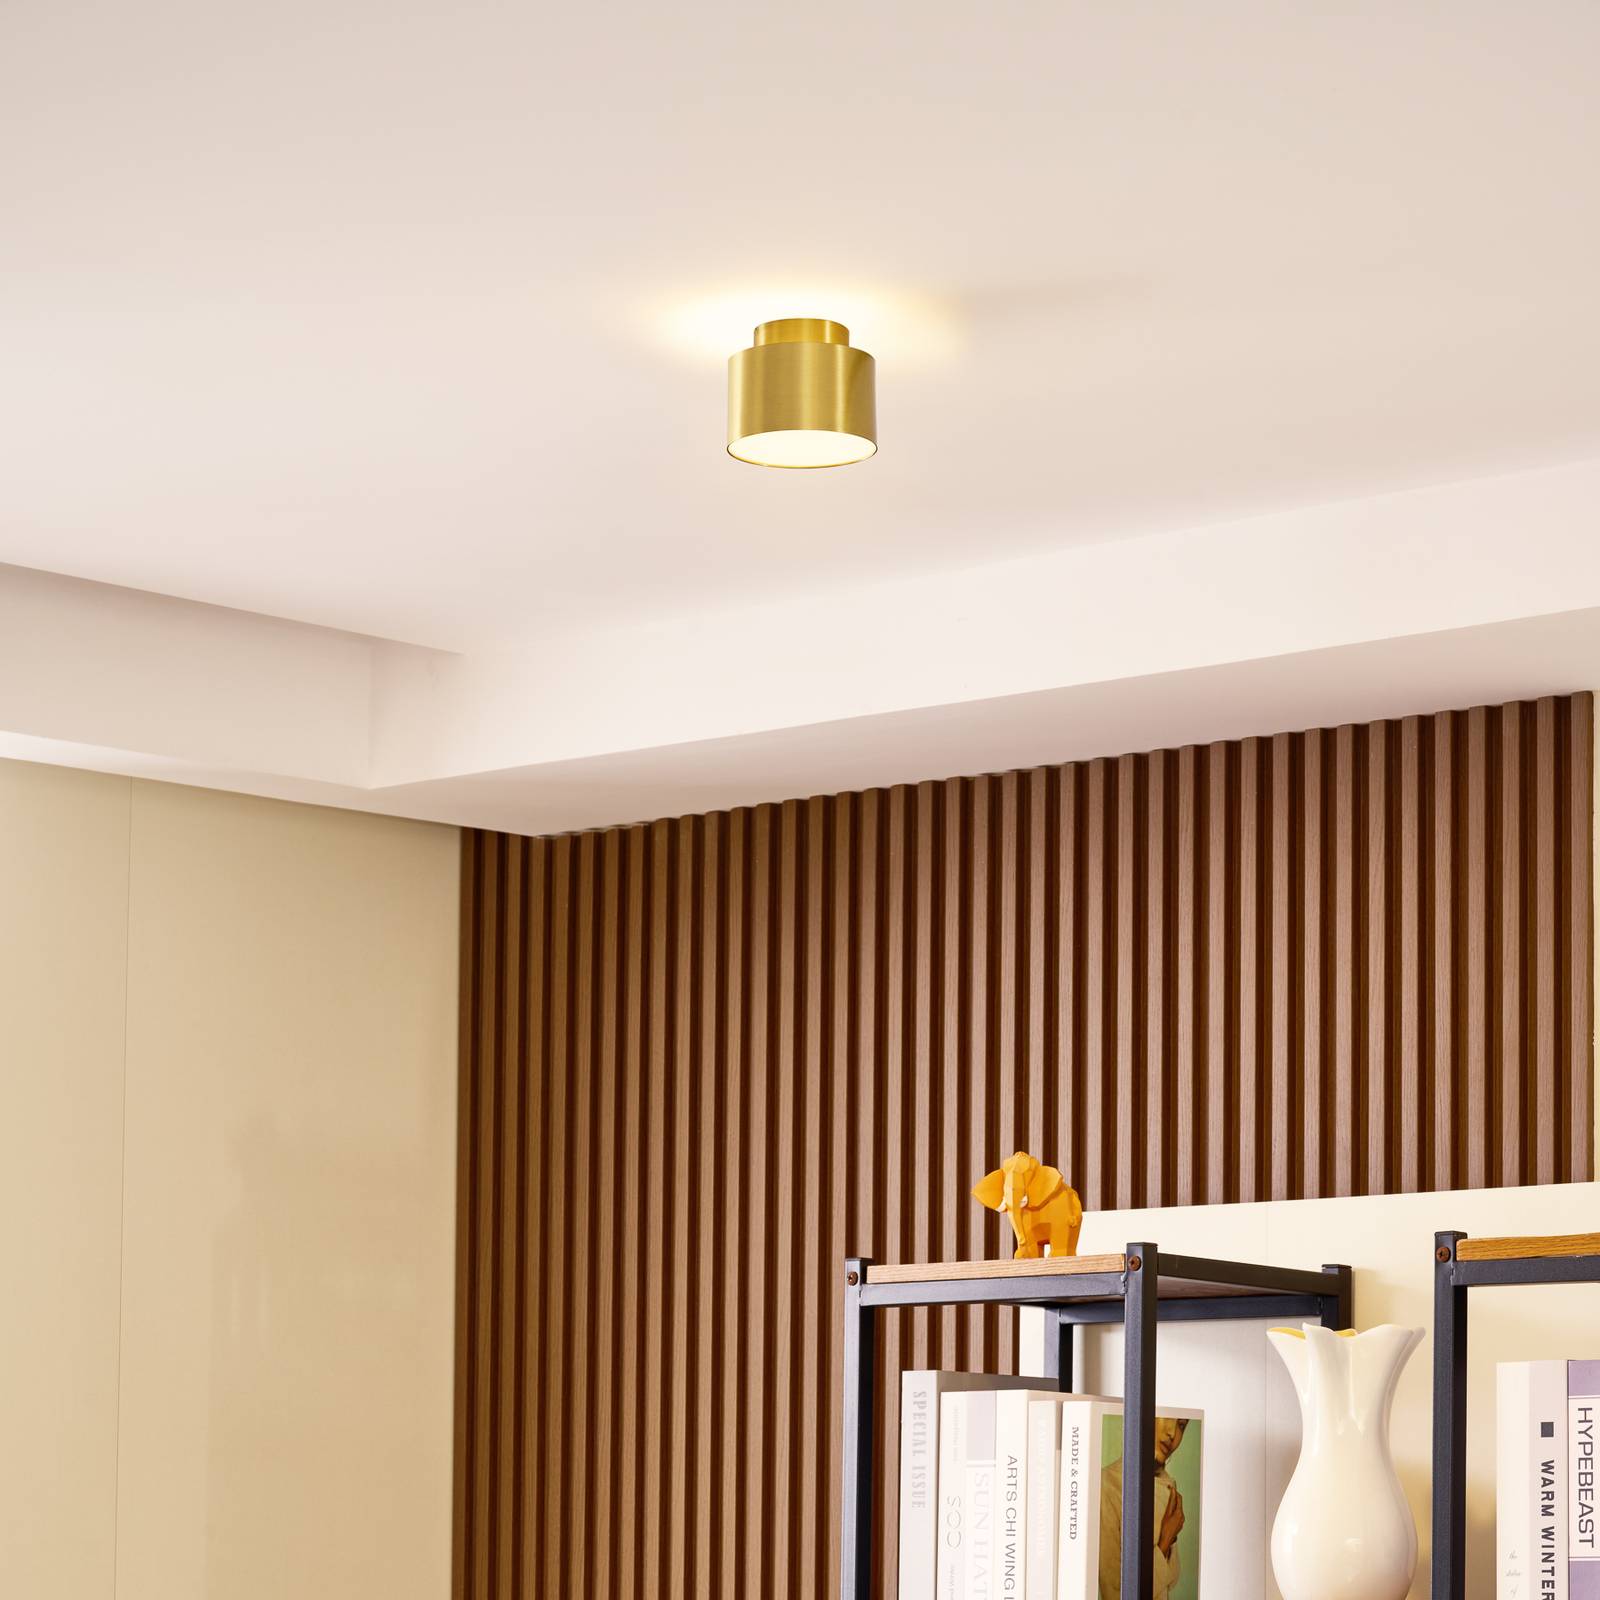 Lindby LED reflektor Nivoria, 11 x 8,8 cm, zlatá farba, hliník